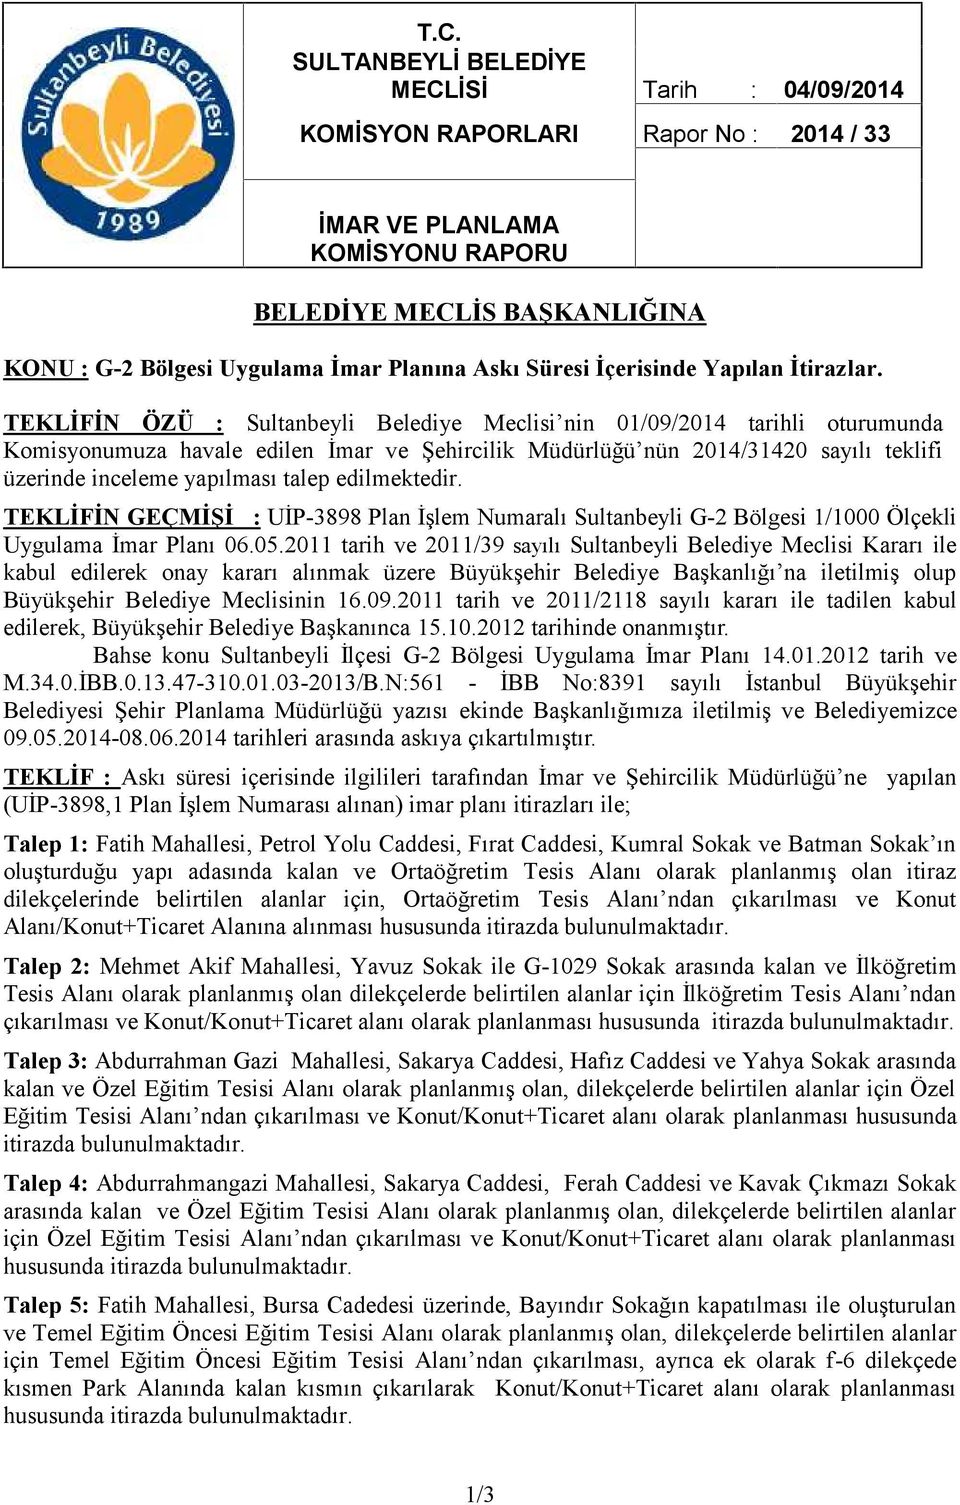 TEKLİFİN GEÇMİŞİ : UİP-3898 Plan İşlem Numaralı Sultanbeyli G-2 Bölgesi 1/1000 Ölçekli Uygulama İmar Planı 06.05.